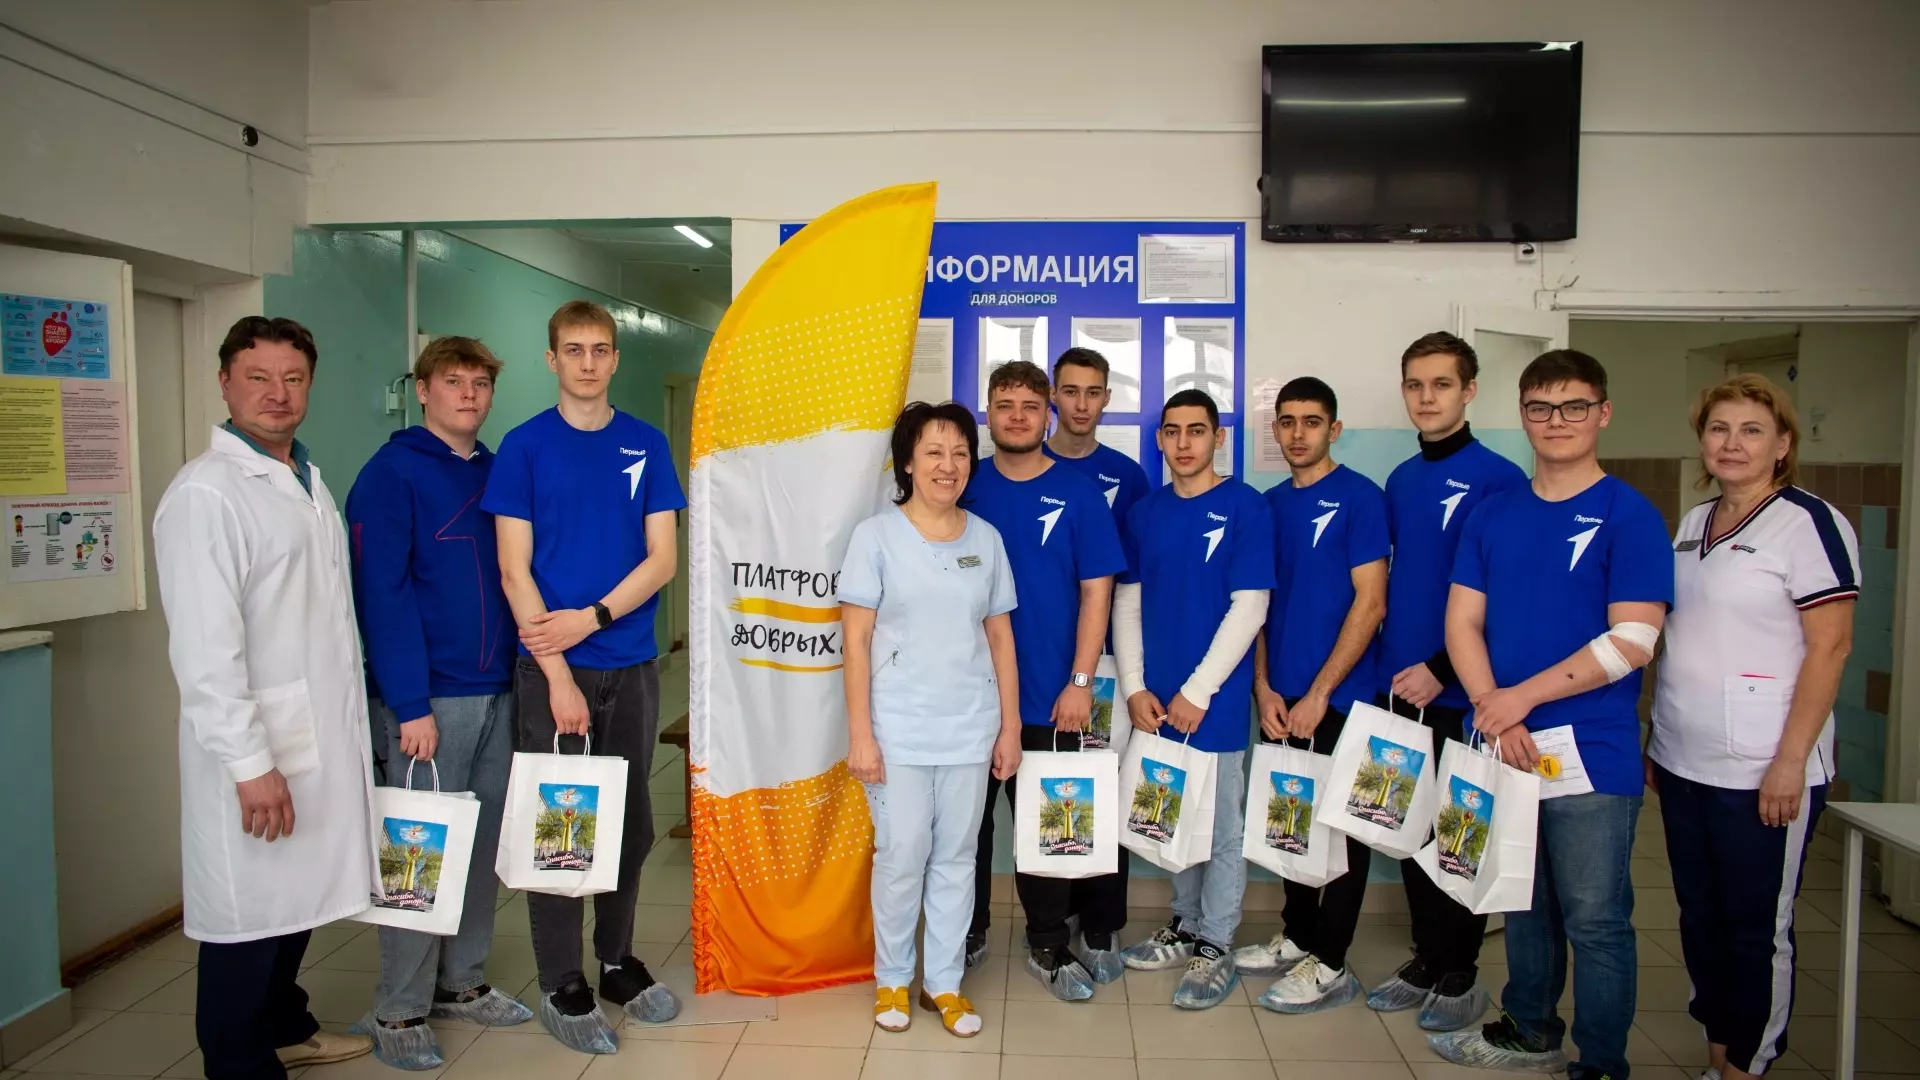 Оренбургнефть развивает наставничество в донорском движении